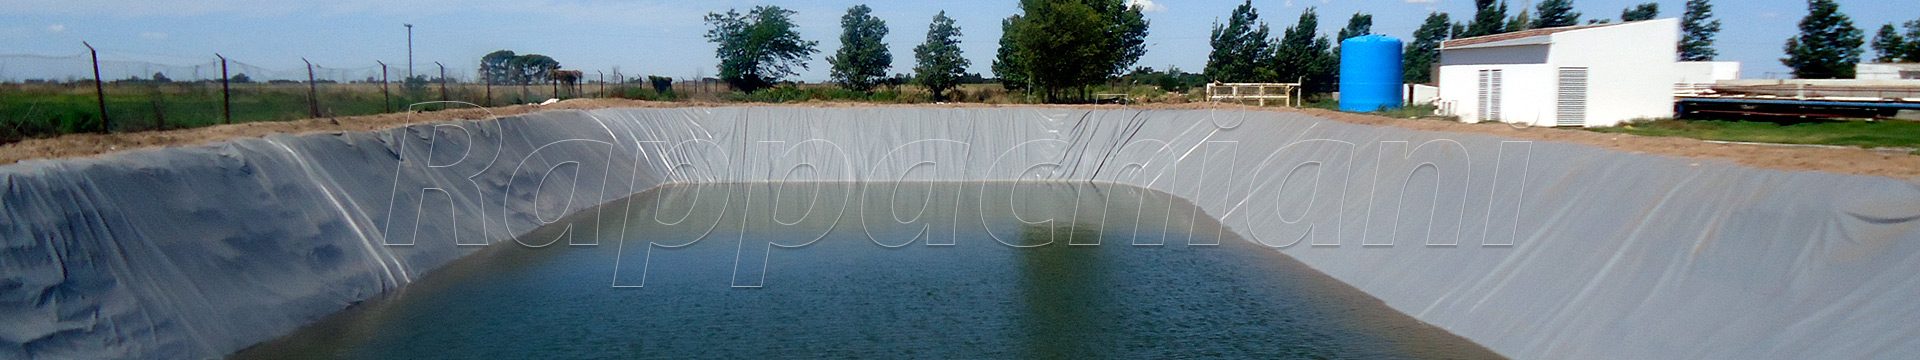 Pisos en estanques artificiales de agua.